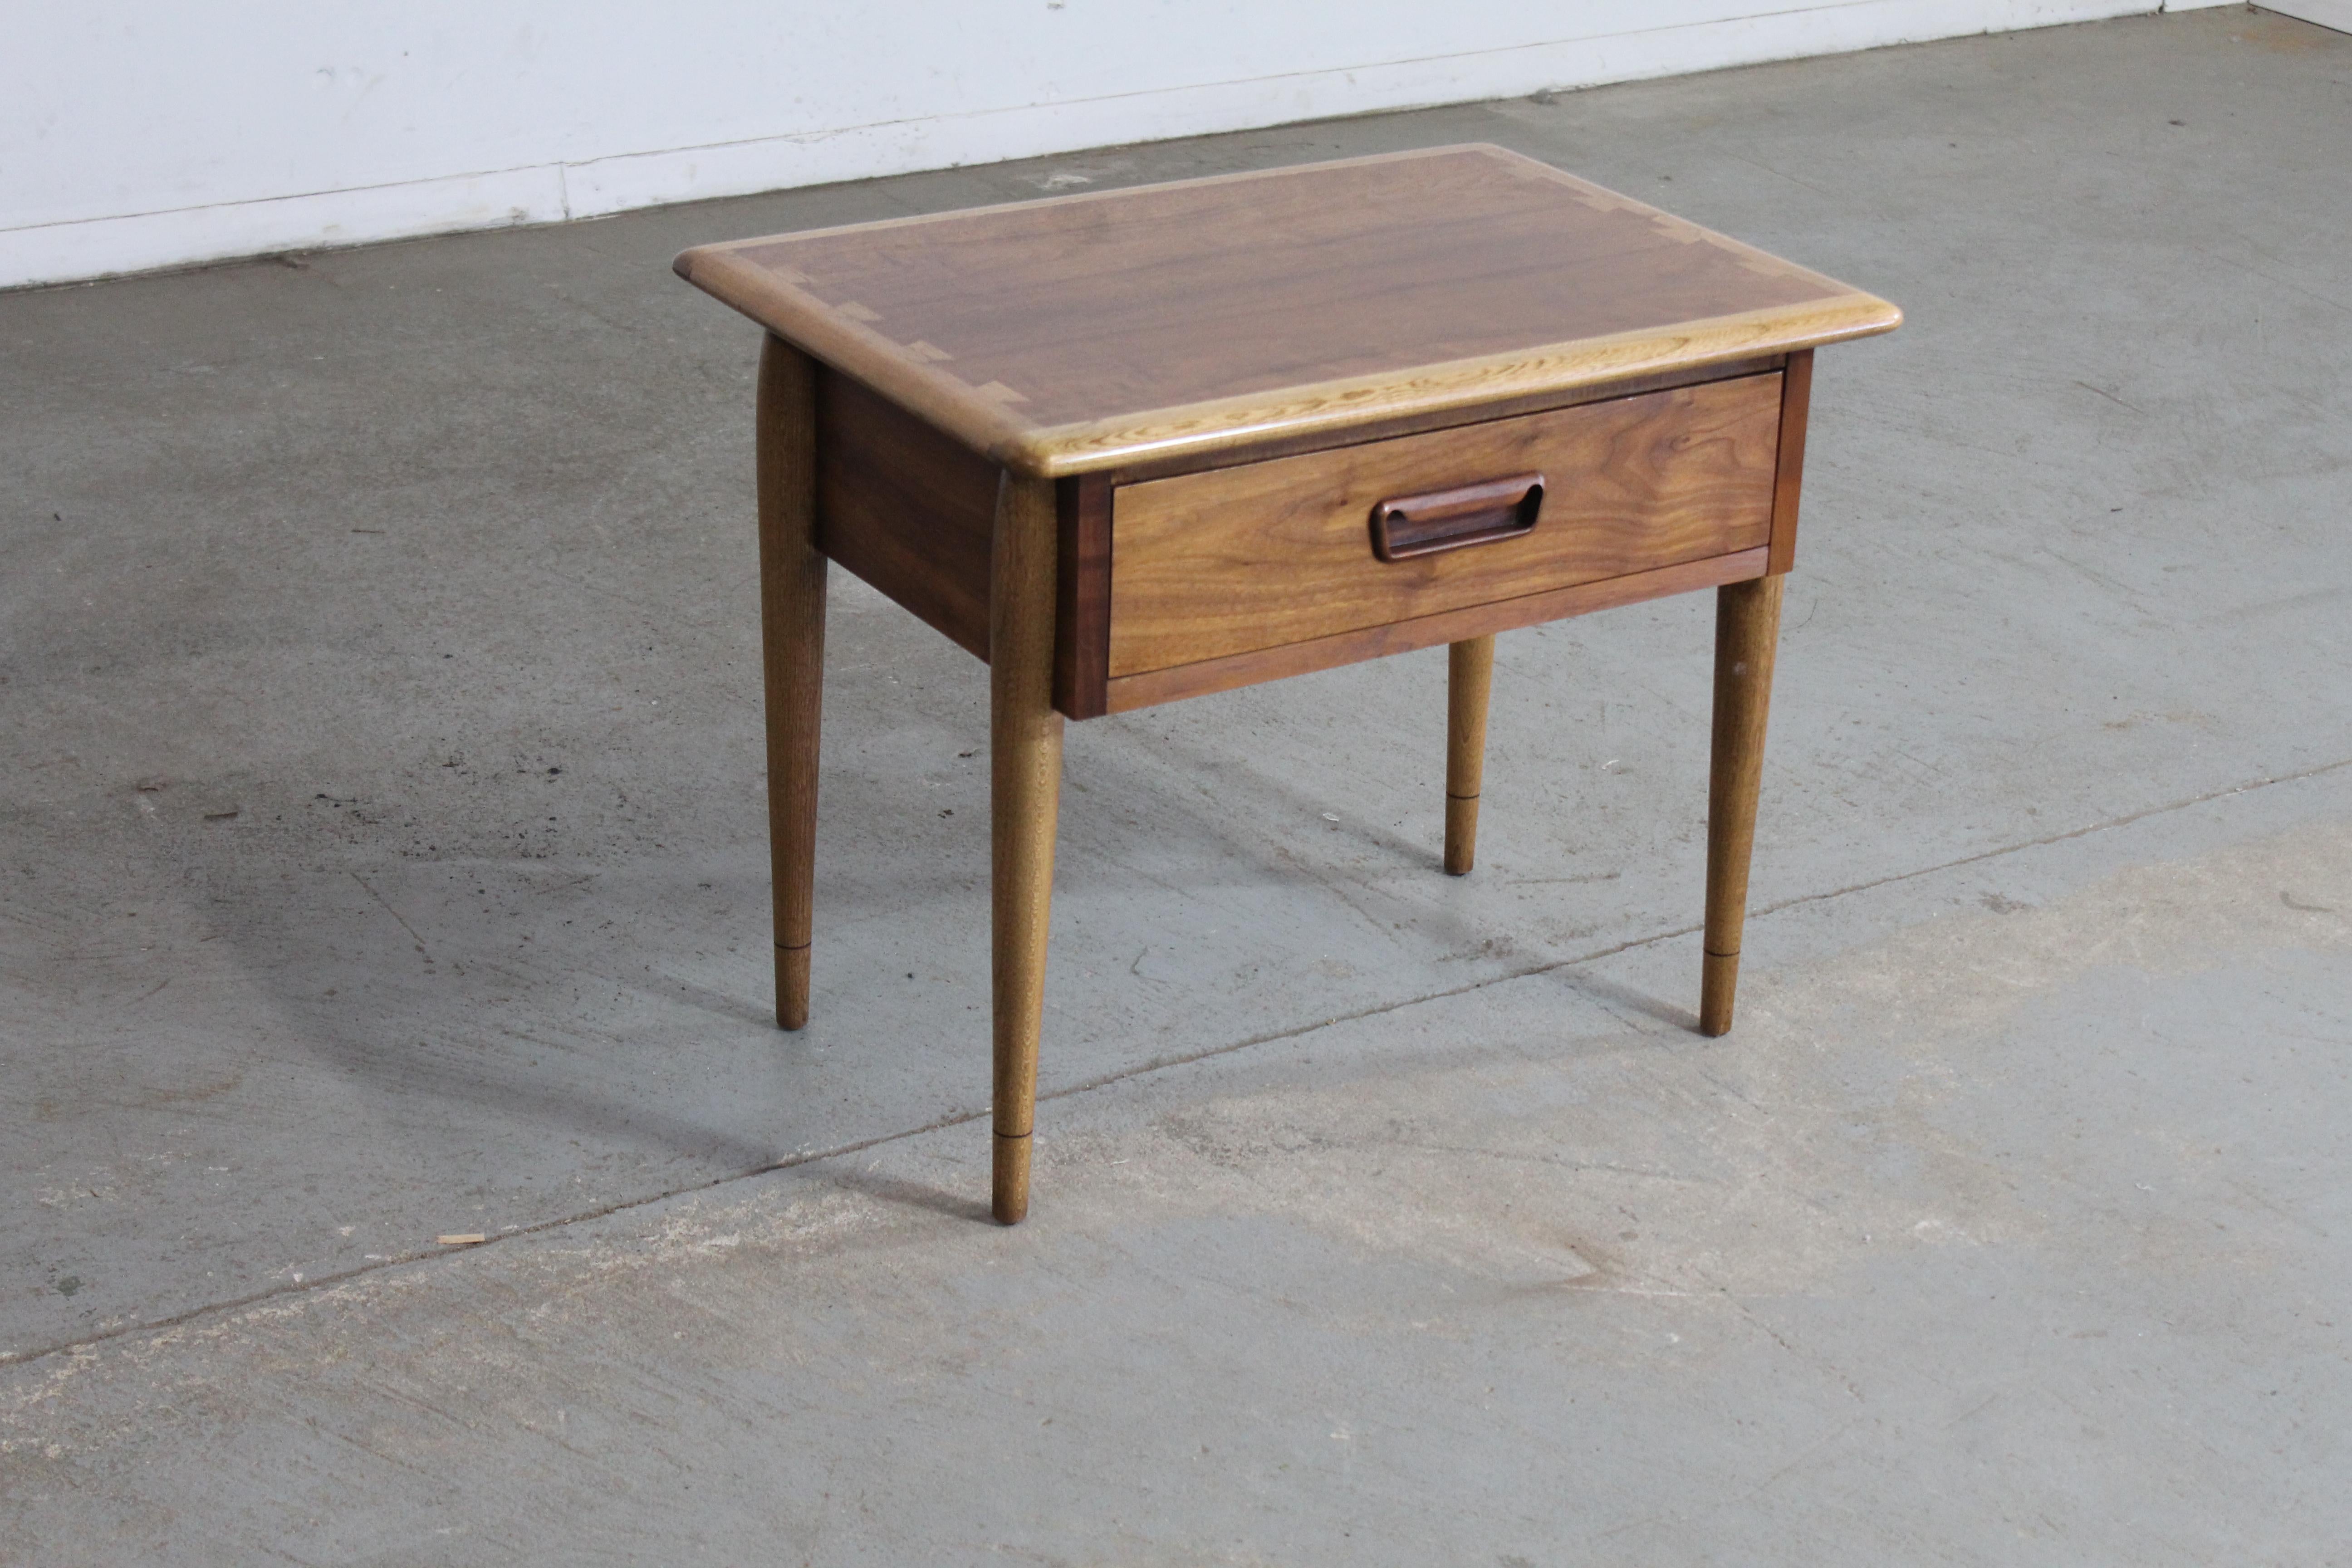 Moderne du milieu du siècle Andre Lane's 'Acclaim'  Table d'appoint à un tiroir

La table d'appoint proposée est une table moderne du milieu du siècle de la collection Lane 'Acclaim', conçue par Andre Bus. Ils sont dotés du design à queue d'aronde